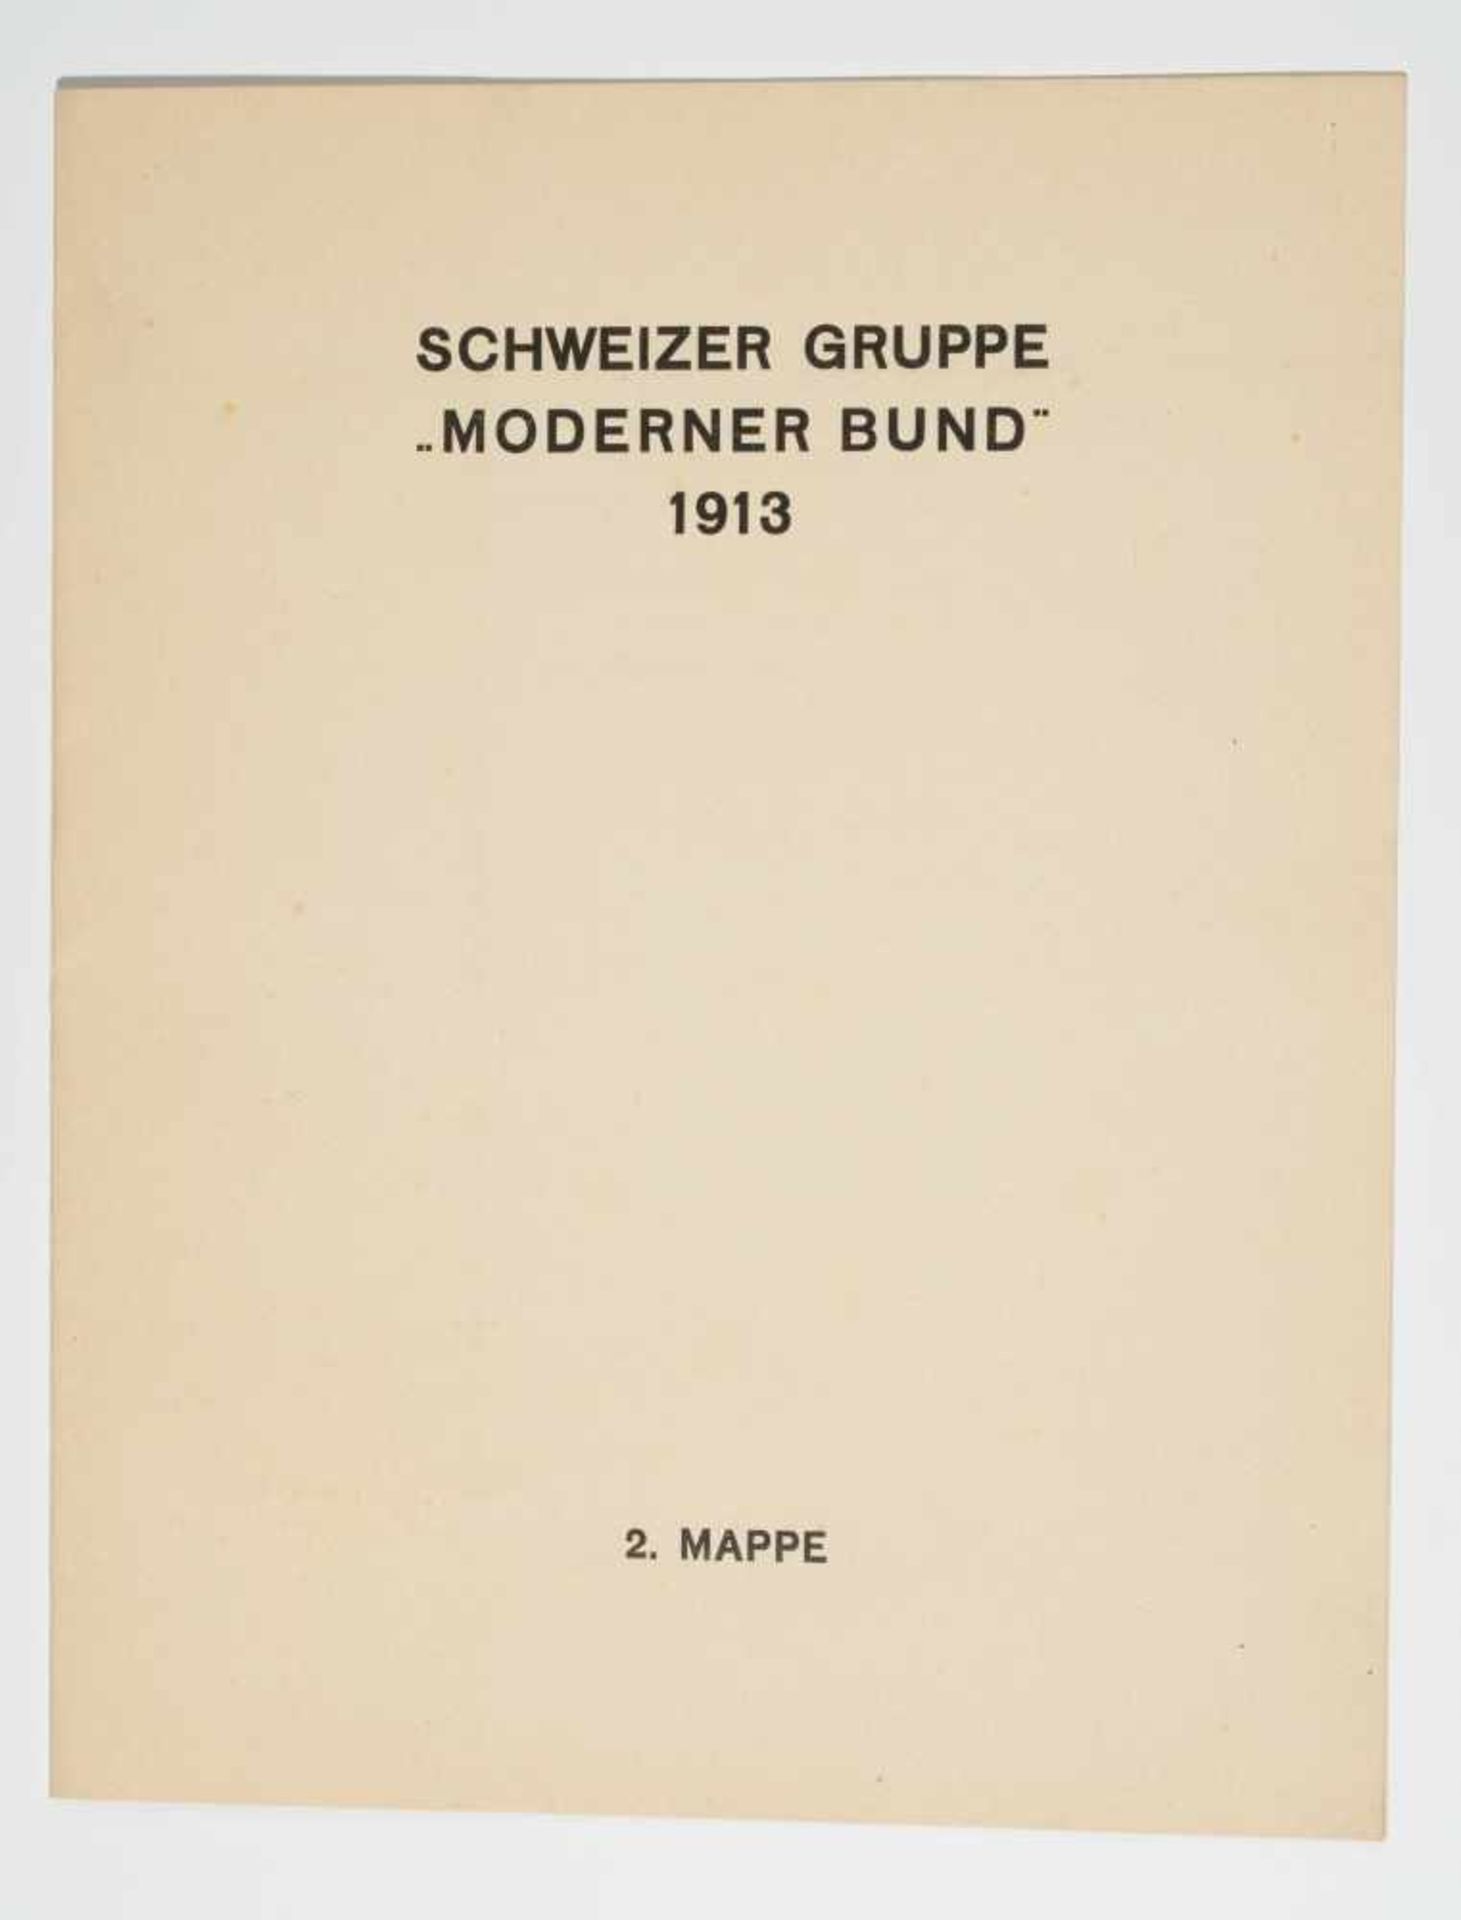 Schweizer Schule, 20.Jh.Schweizer Gruppe "Moderner Bund" 1913. Mappe mit schwarzem Umschlag - Bild 11 aus 29